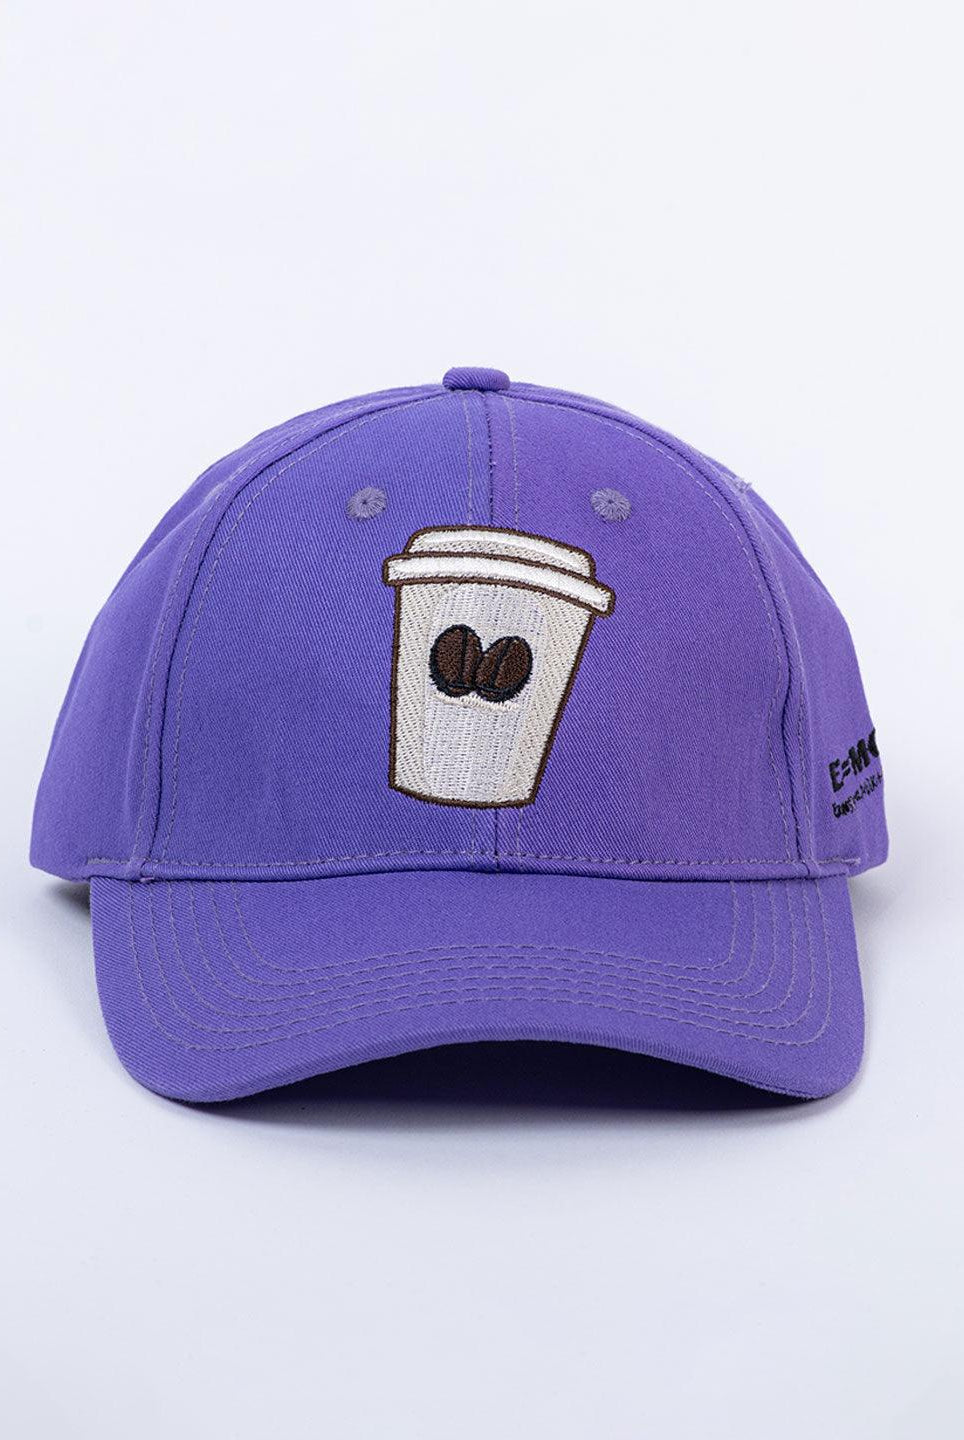 Coffee Mug Purple Free Size Unisex Baseball Caps - Tistabene